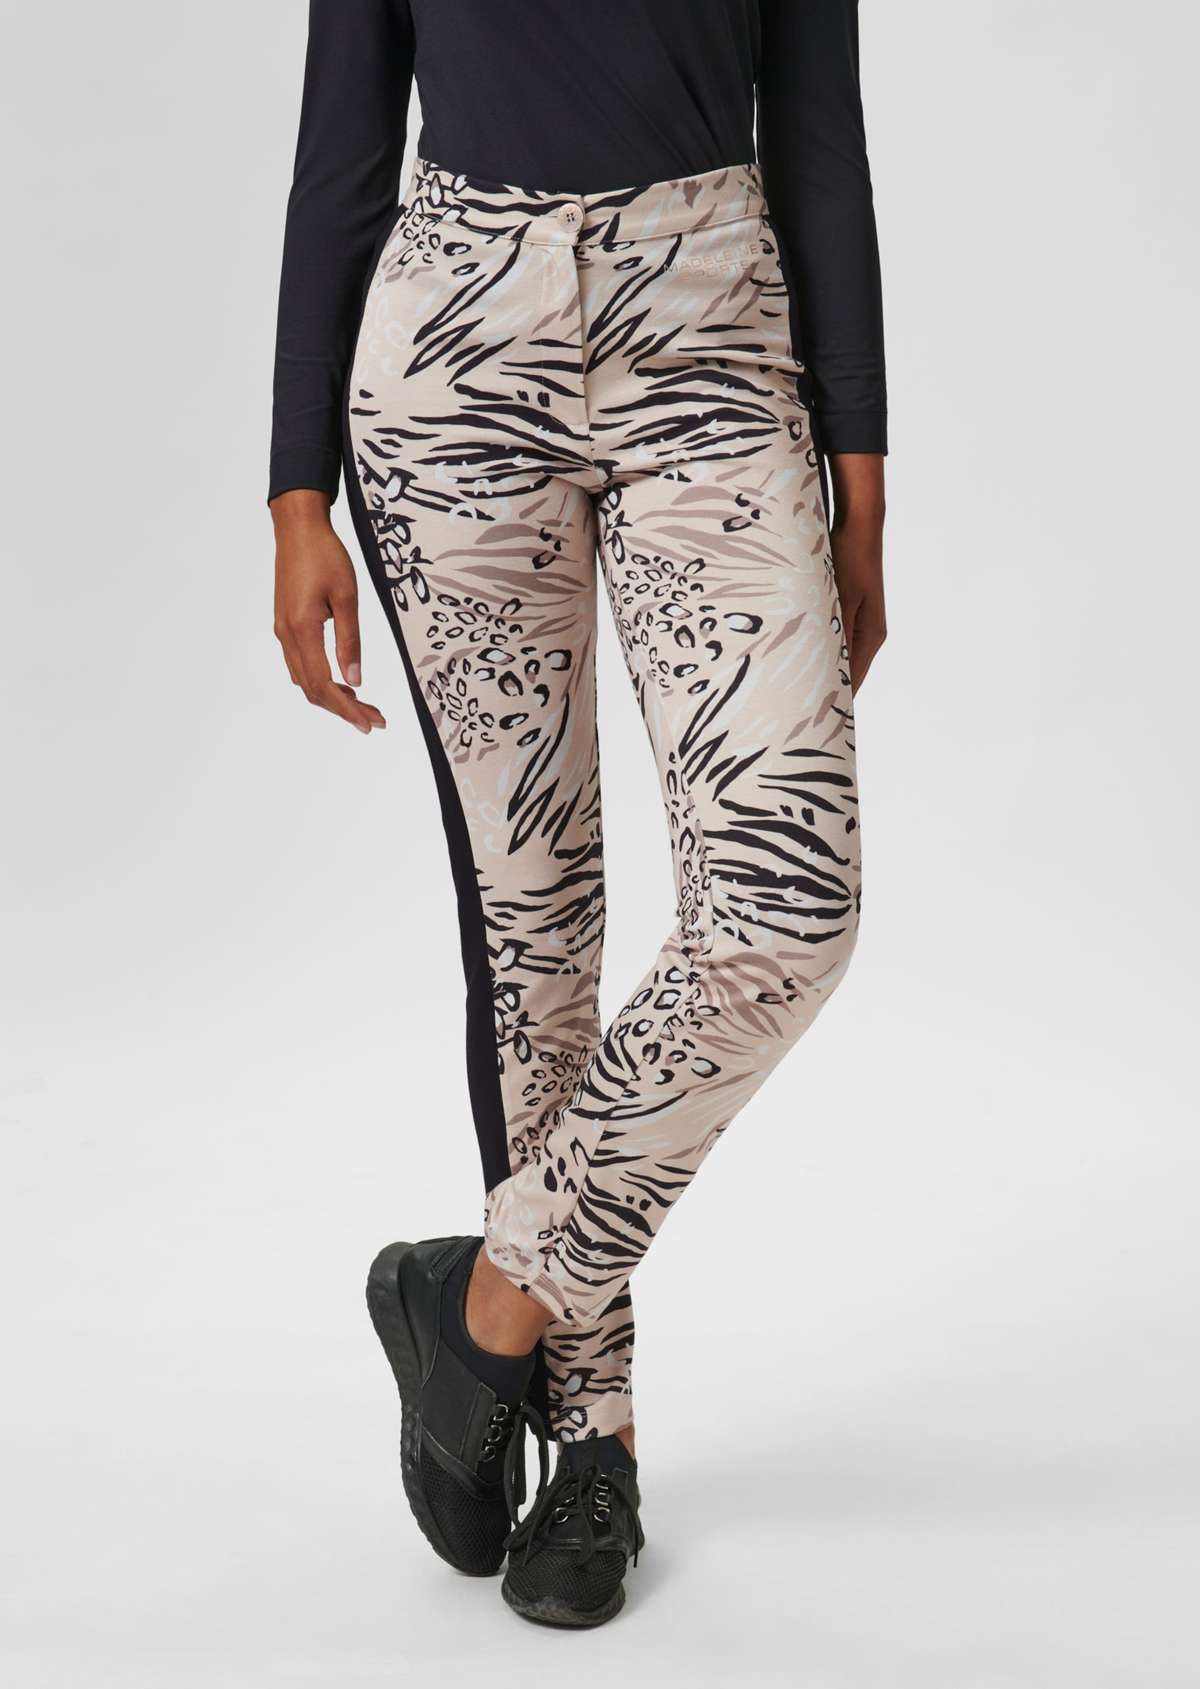 Узкие брюки с абстрактным принтом и декоративными полосками.